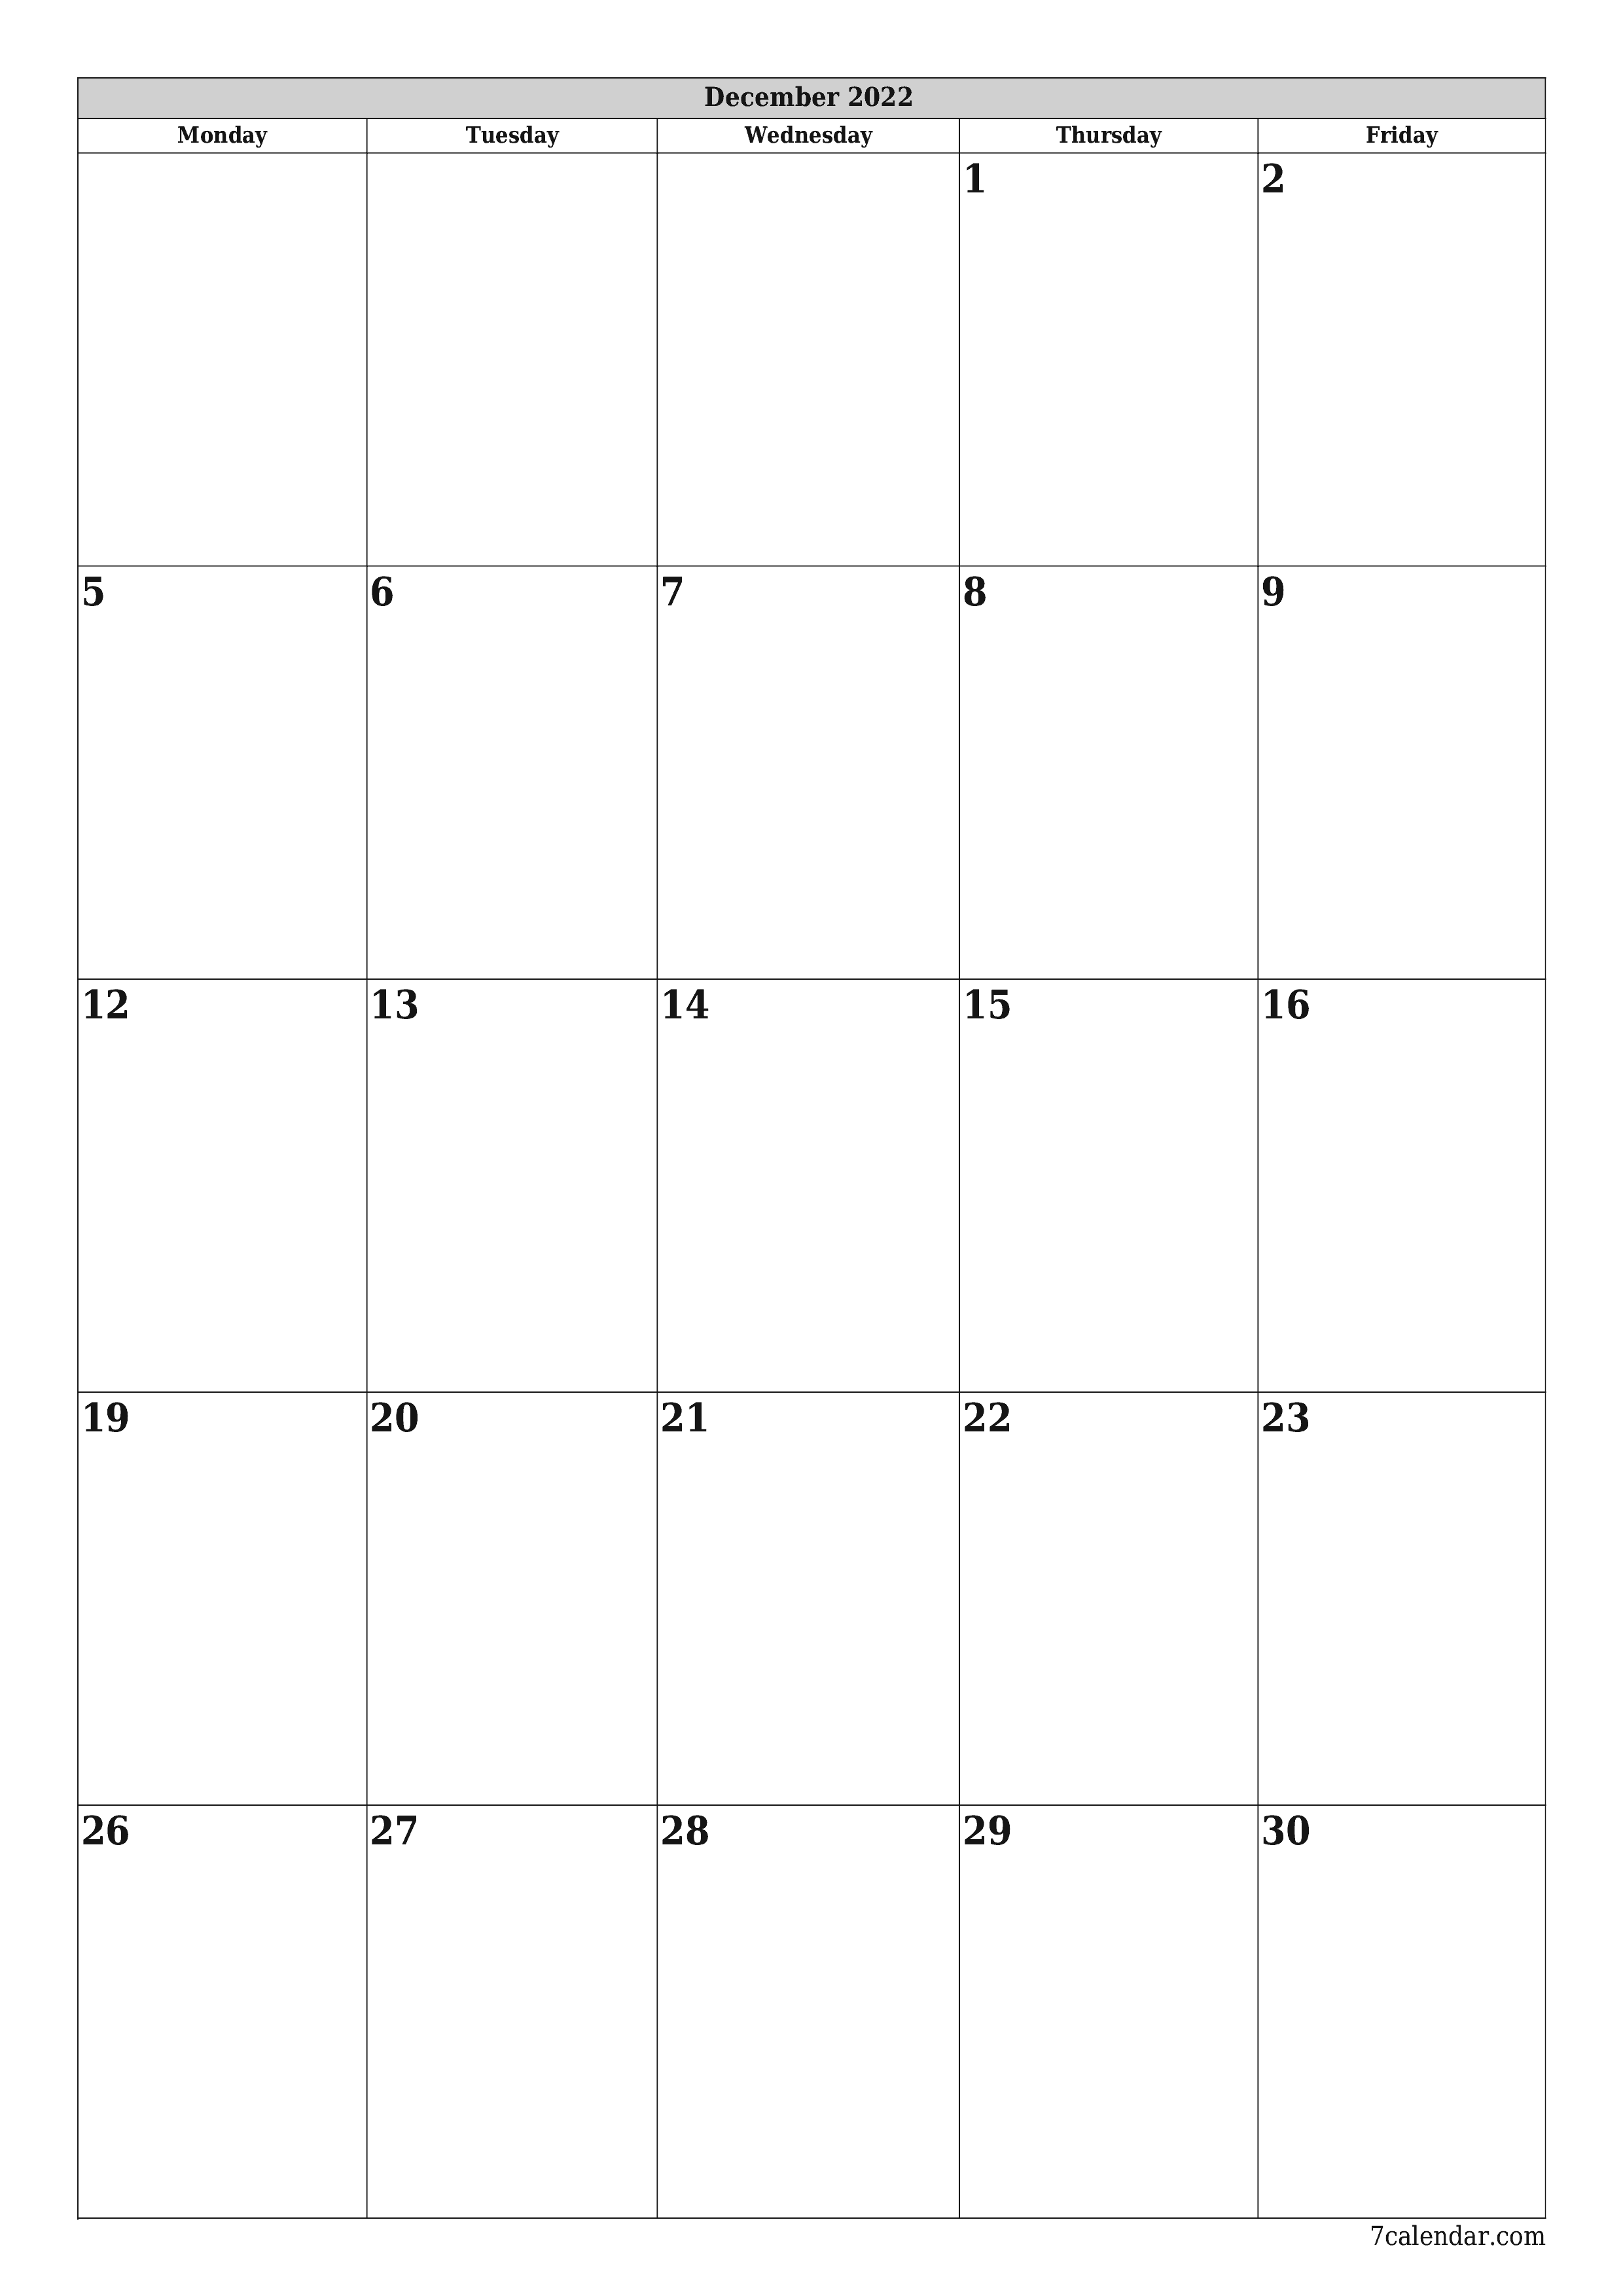 Blank calendar December 2022